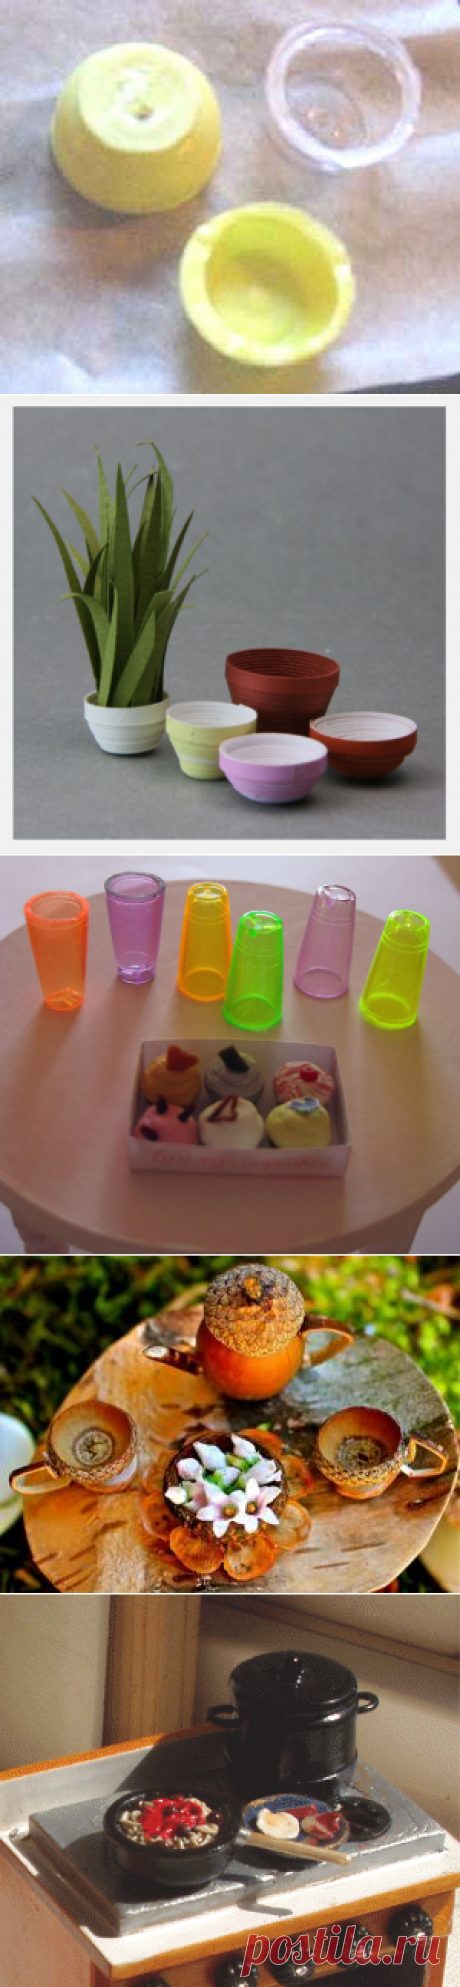 Посуда для кукол своими руками: тарелки, кружки, кастрюли, стаканы | Новостной портал вТЕМУ - всегда полезная информация